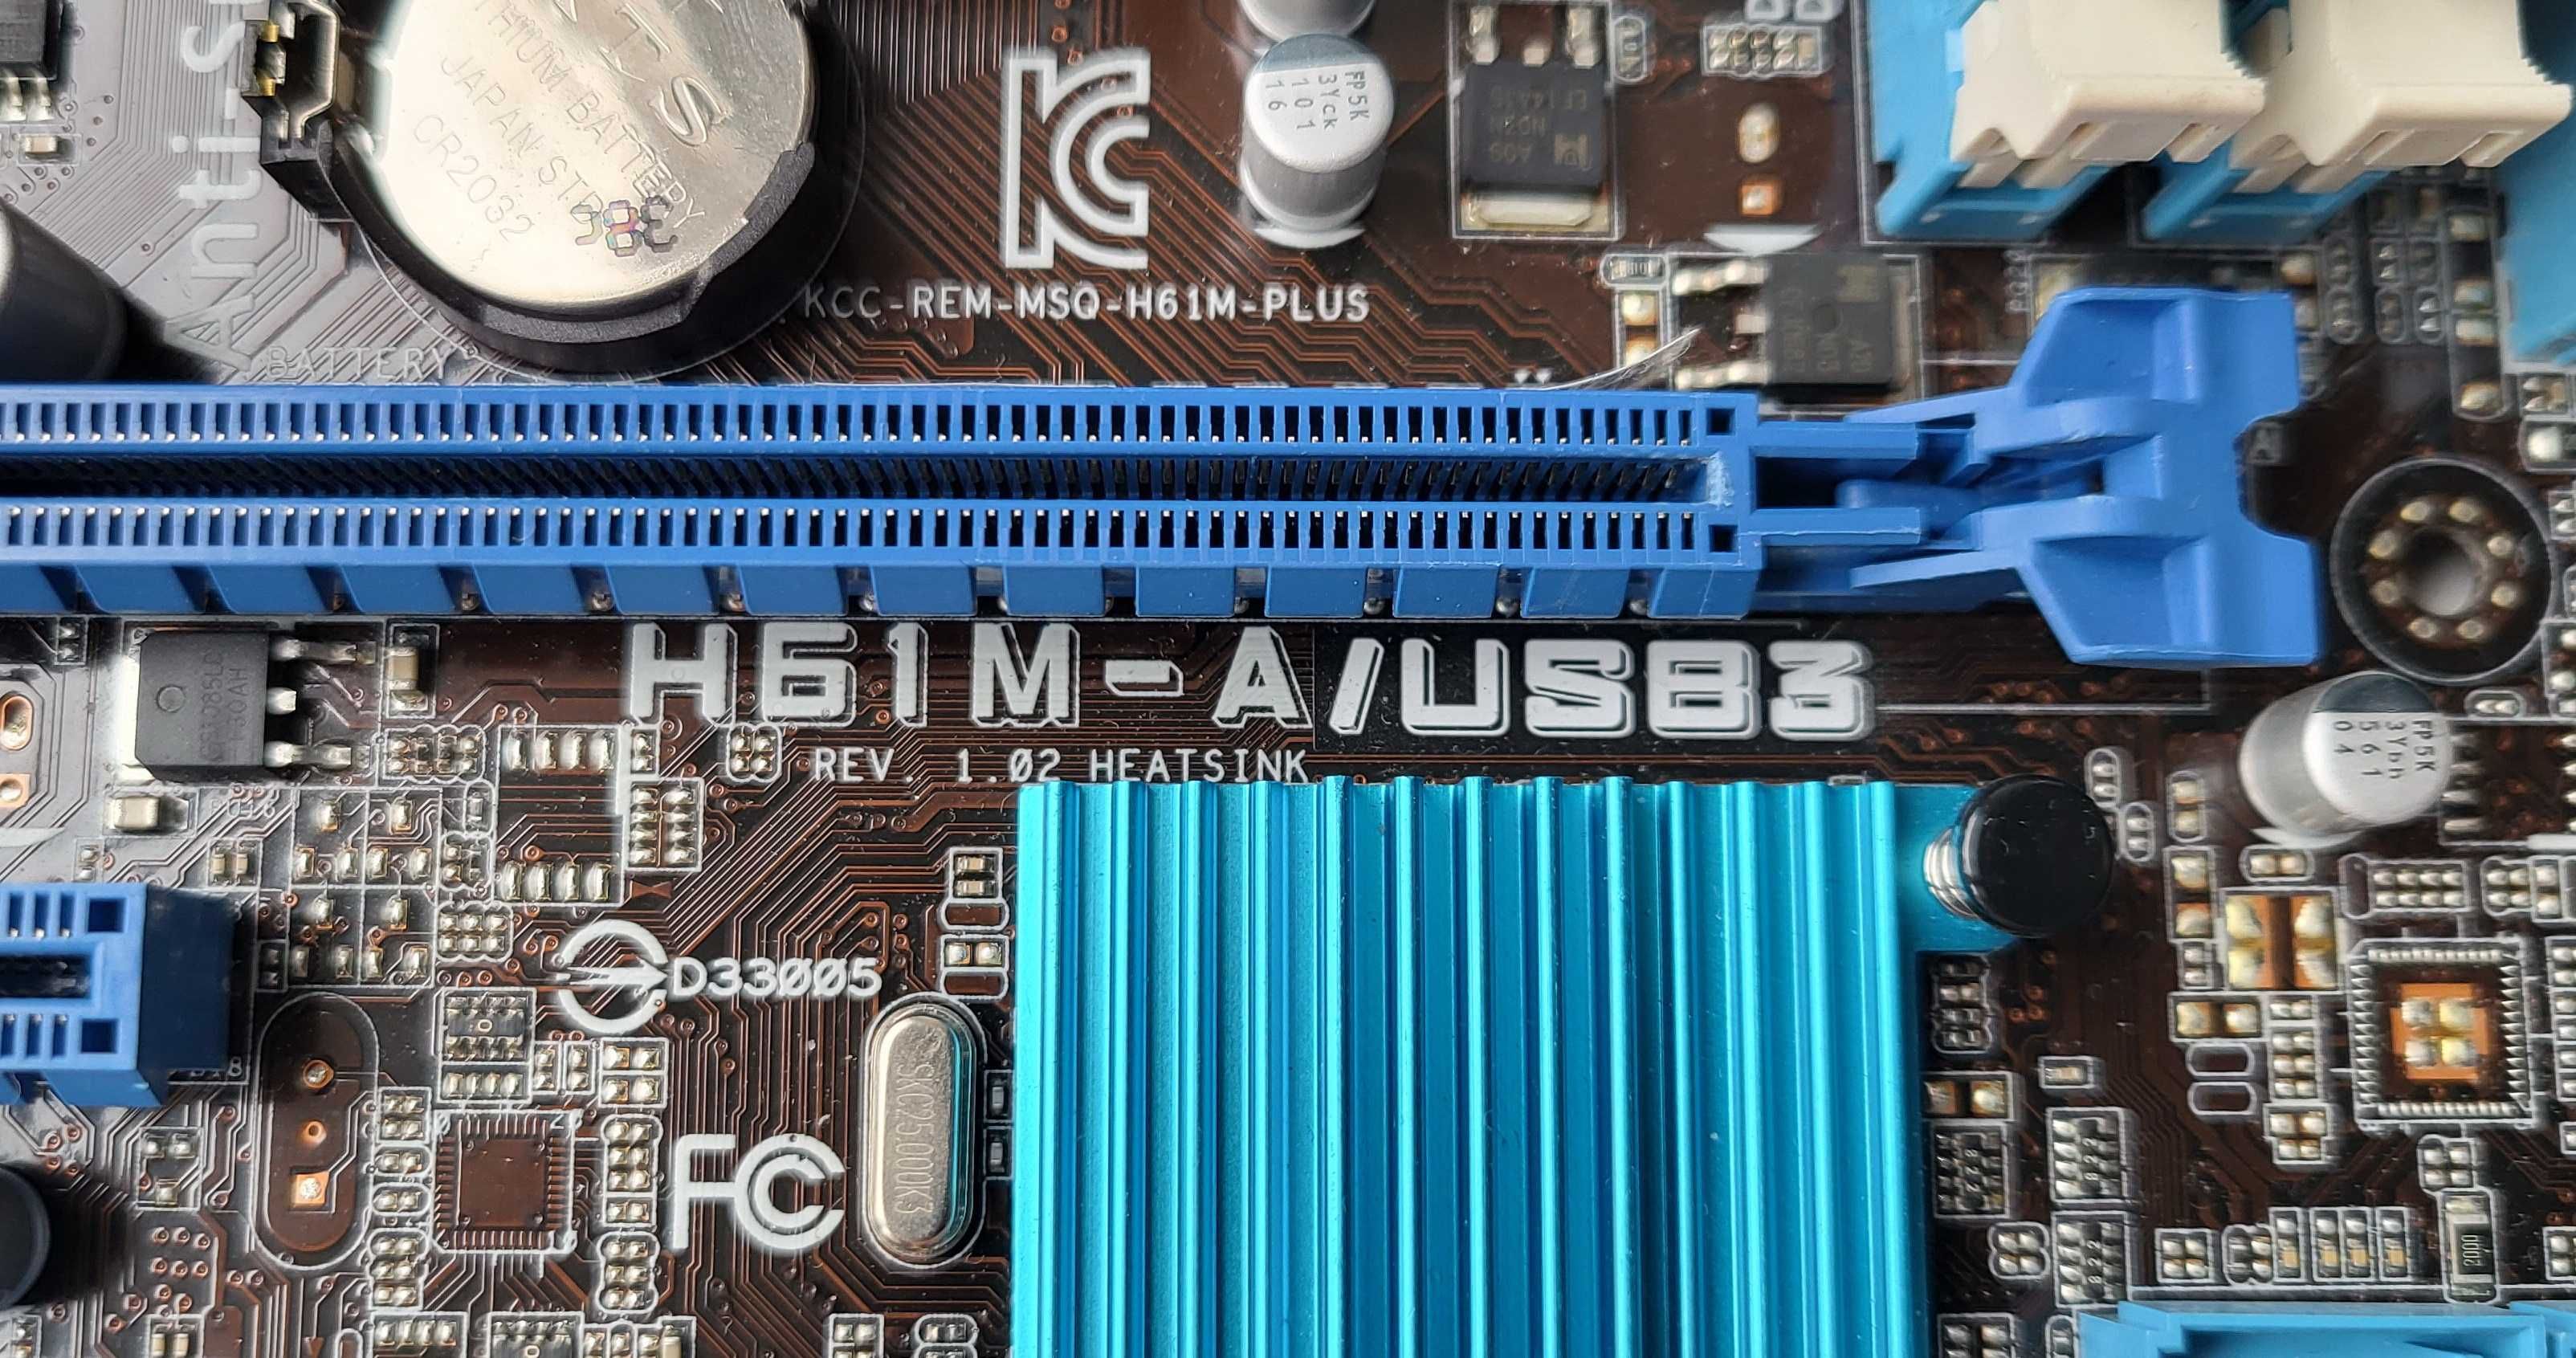 Комплект Asus H61M-A/USB3 + Intel Core i5-2500K + 12Gb DDR3